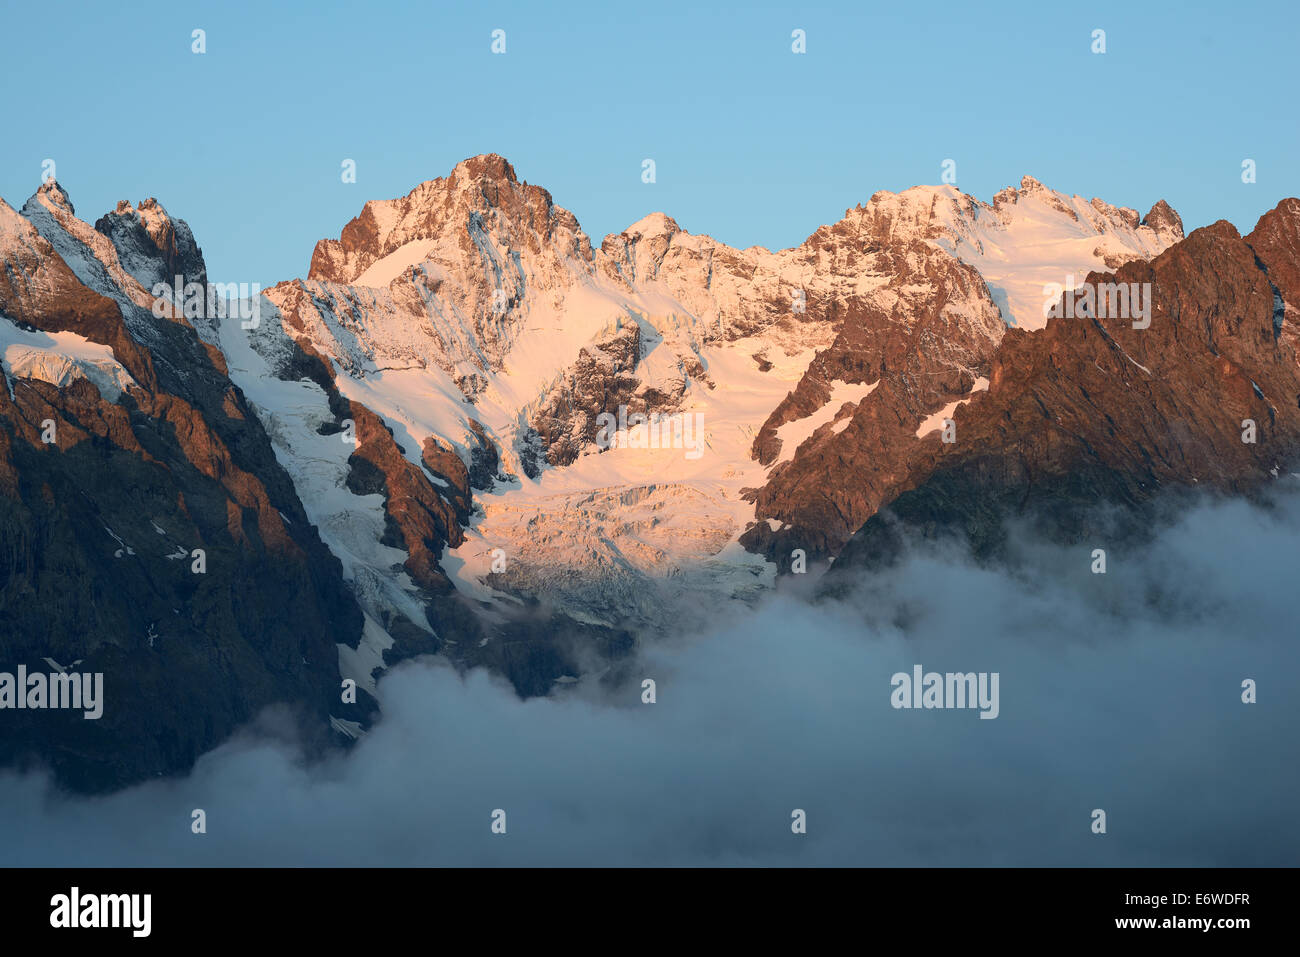 3883 Meter hohes Pic Gaspard auf der linken Seite und 3984 Meter hohes La Meije auf der rechten Seite. Ecrins-Nationalpark, Hautes-Alpes, Frankreich. Stockfoto